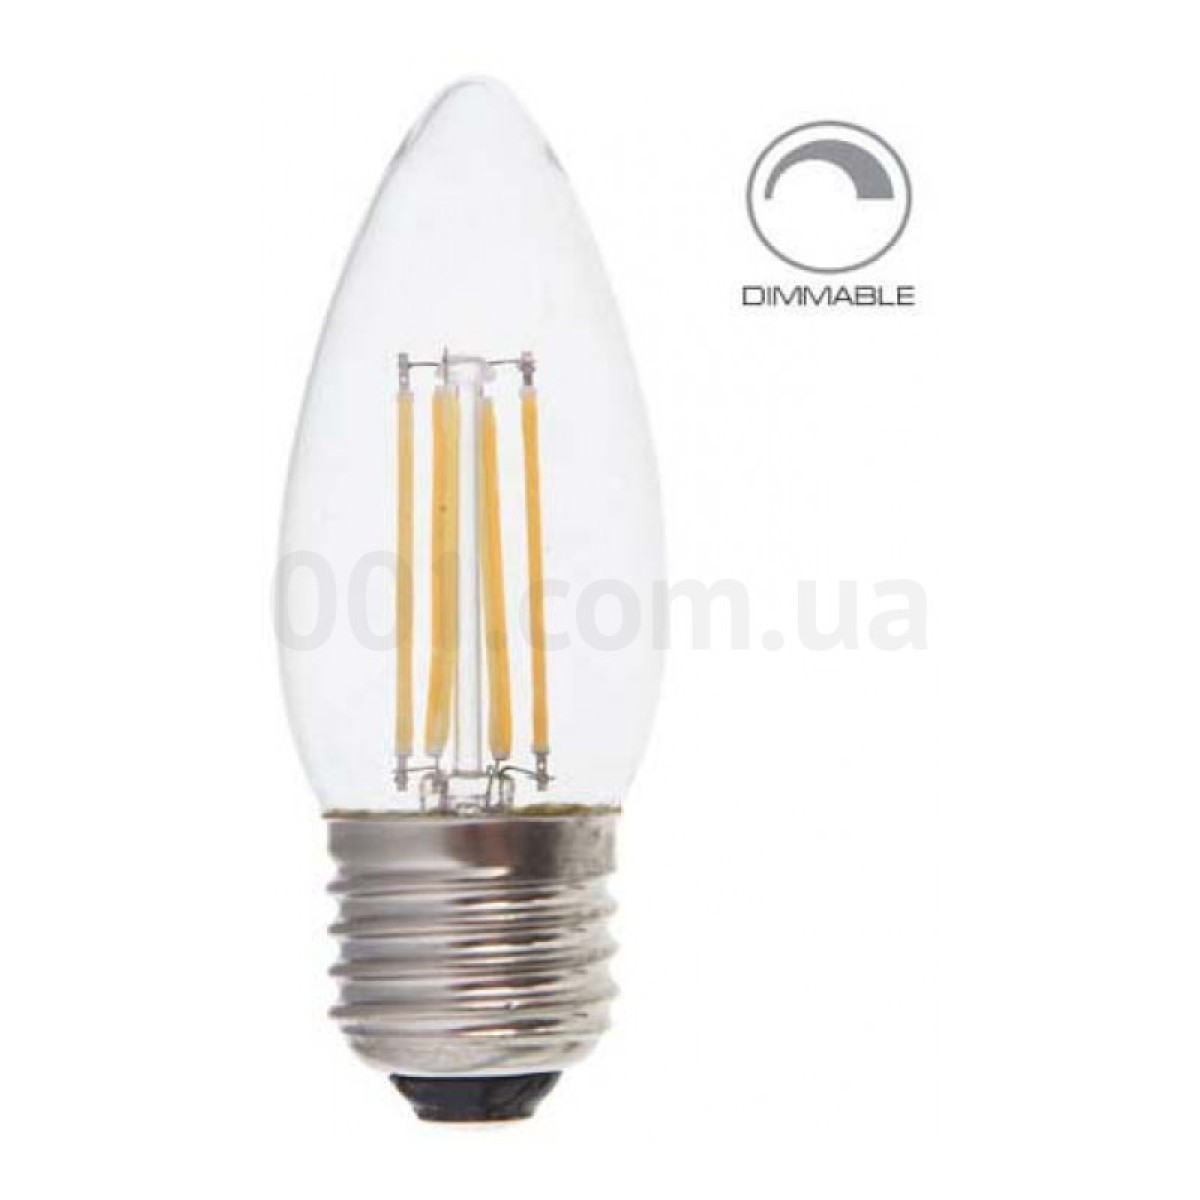 Світлодіодна лампа LB-68 DIMM C37 (свічка) філамент 4Вт 4000K E27, Feron 256_256.jpg